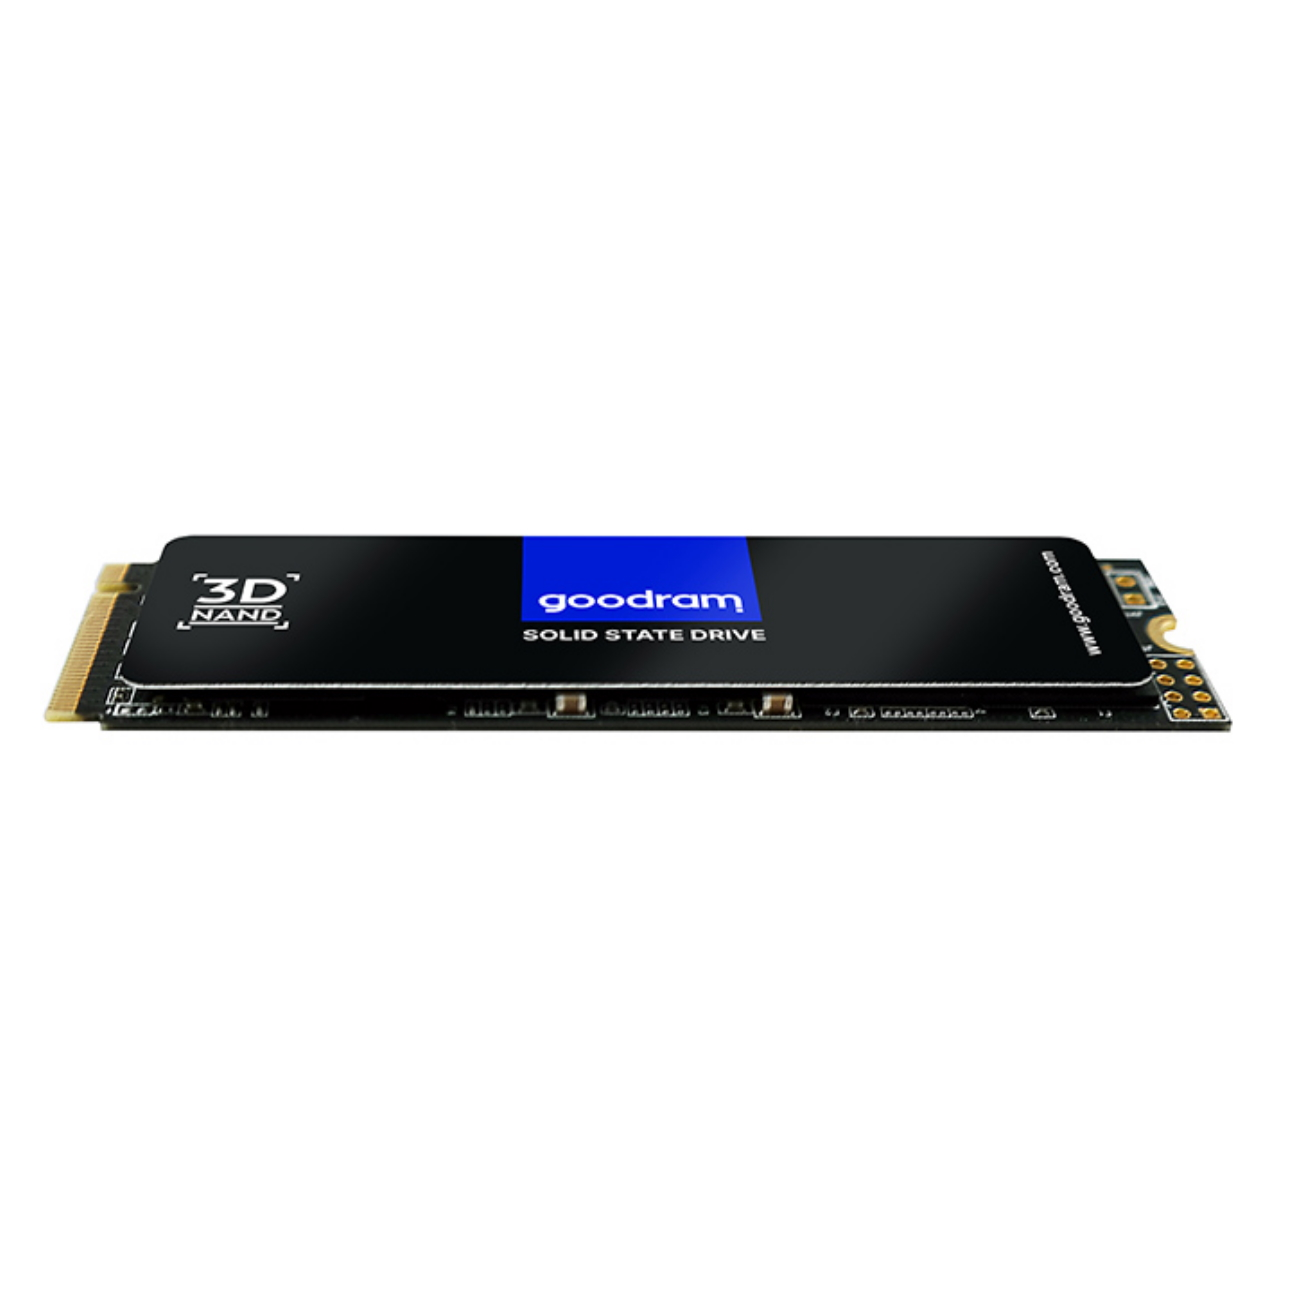 GOOD RAM 1TB SSD PX500 2280 RETAIL, 1000 GB, 3x4 intern mSSD, M.2 PCIe